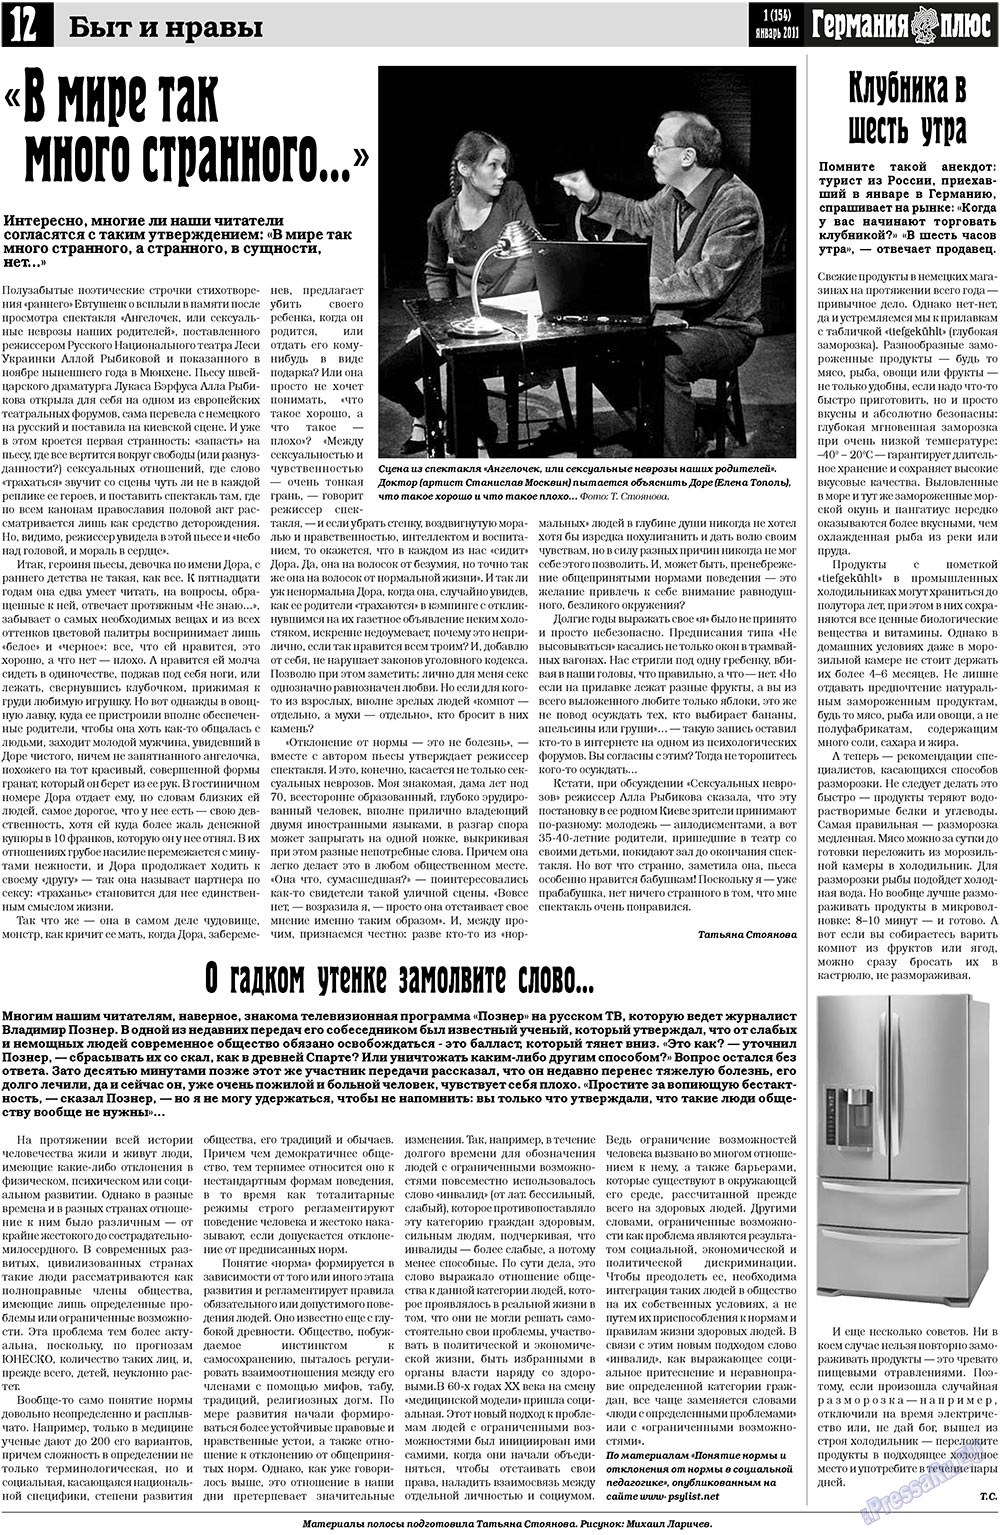 Германия плюс (газета). 2011 год, номер 1, стр. 12